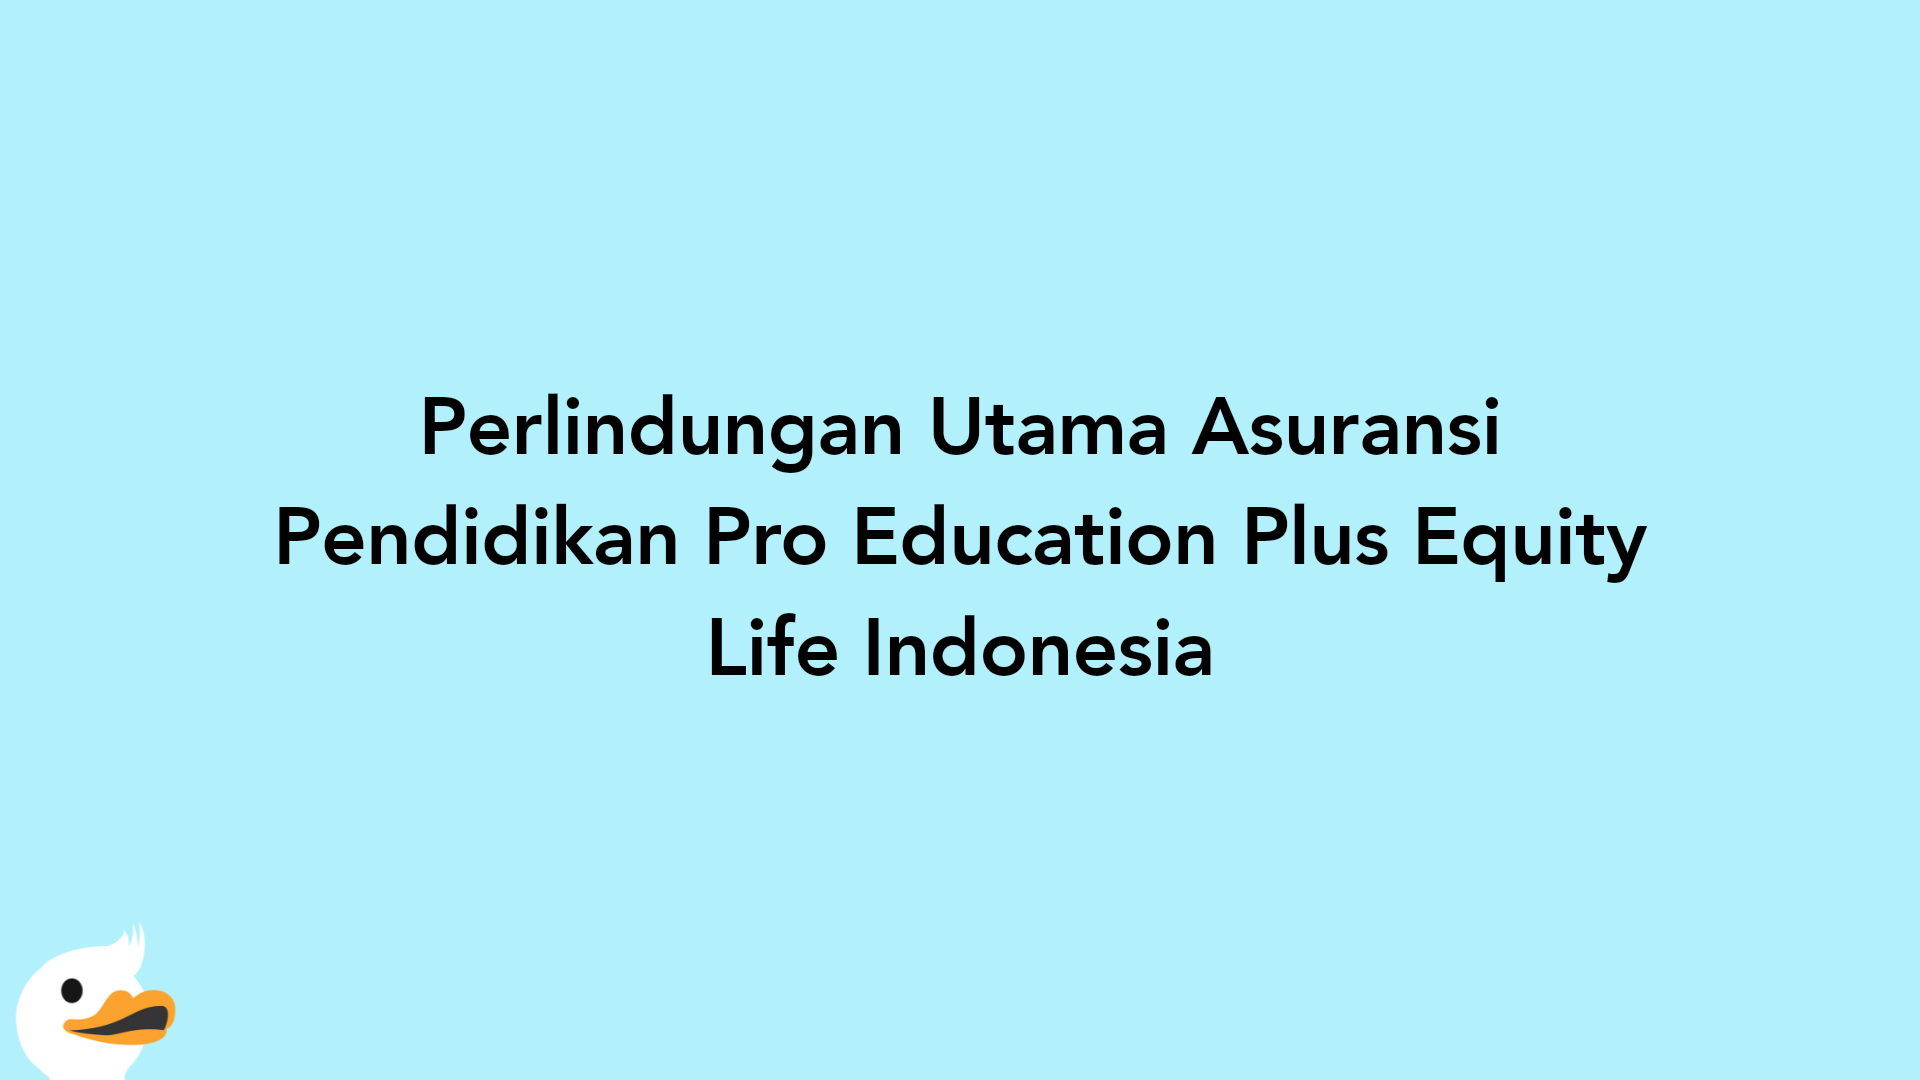 Perlindungan Utama Asuransi Pendidikan Pro Education Plus Equity Life Indonesia